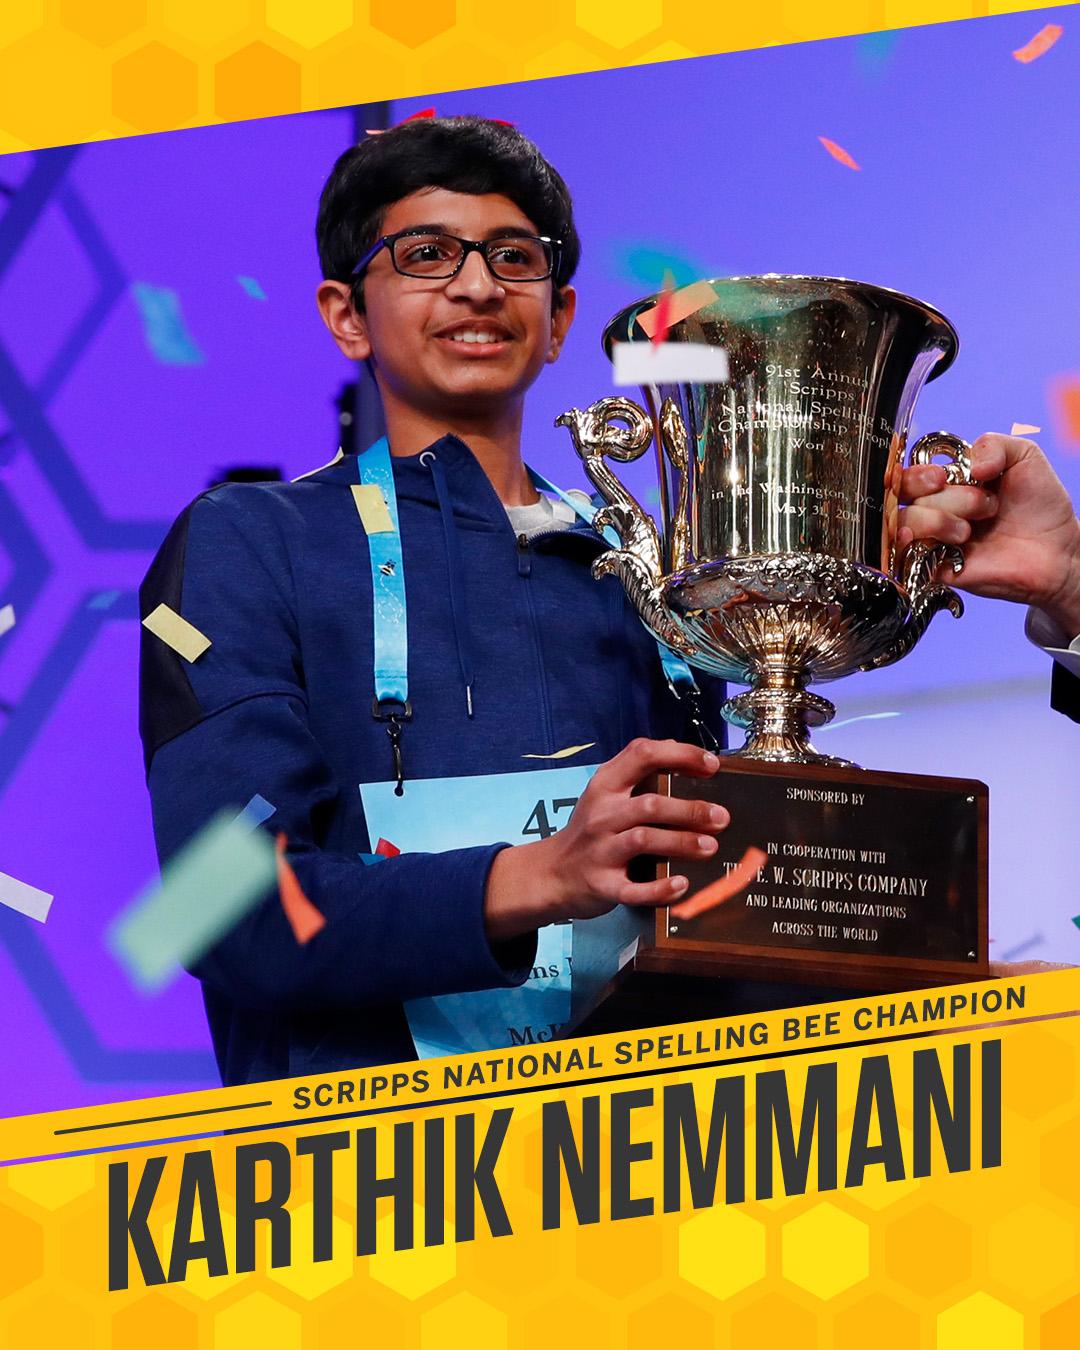 Meet our 2018 Champion, Karthik Nemmani!